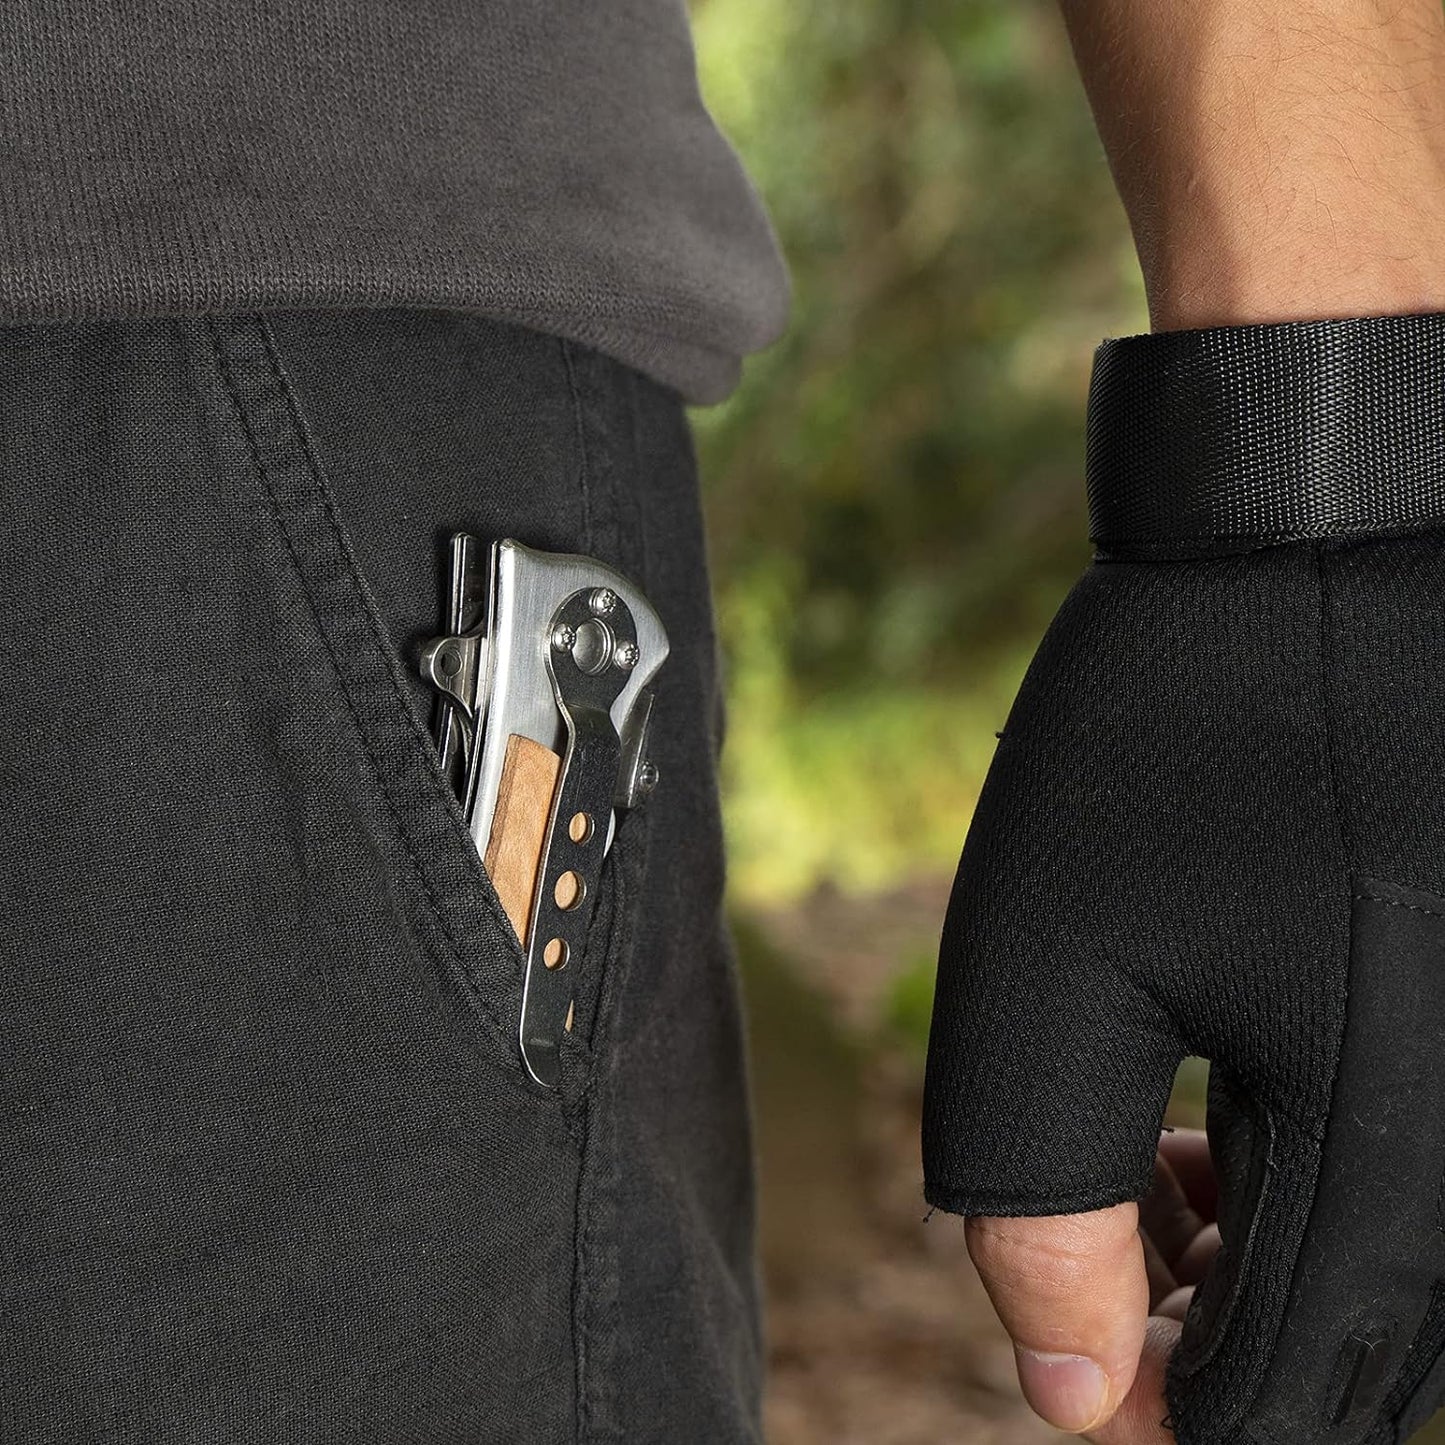 kd-pocket-folding-knife-safety-liner-lock-belt-clip-wooden